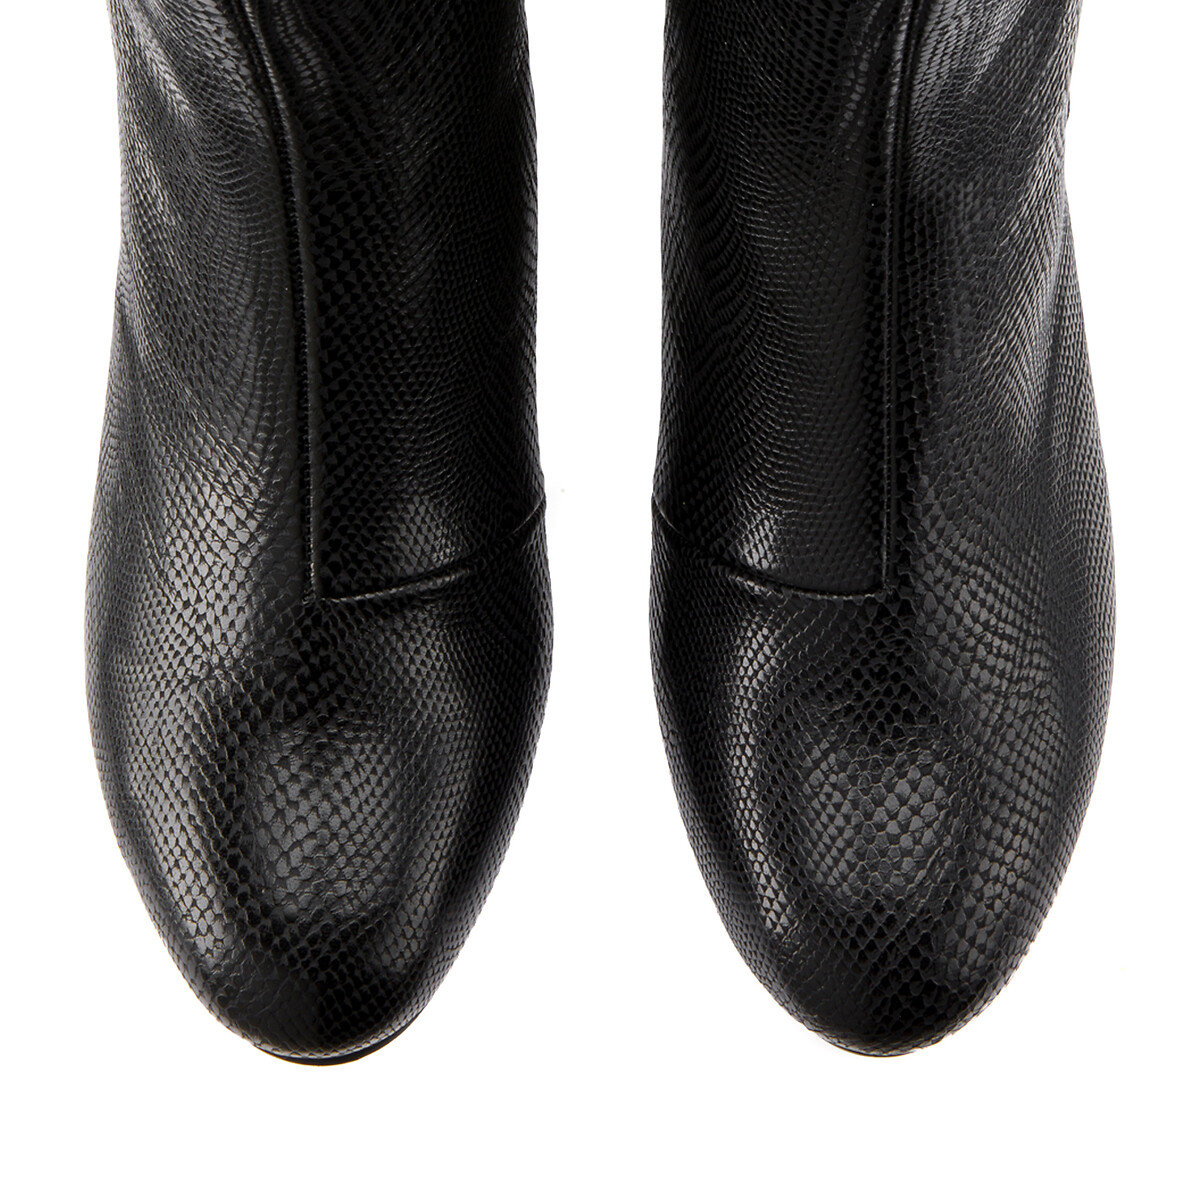 Ботинки LaRedoute На широком каблуке под кожу рептилии для широкой стопы 38-45 38 черный, размер 38 - фото 3